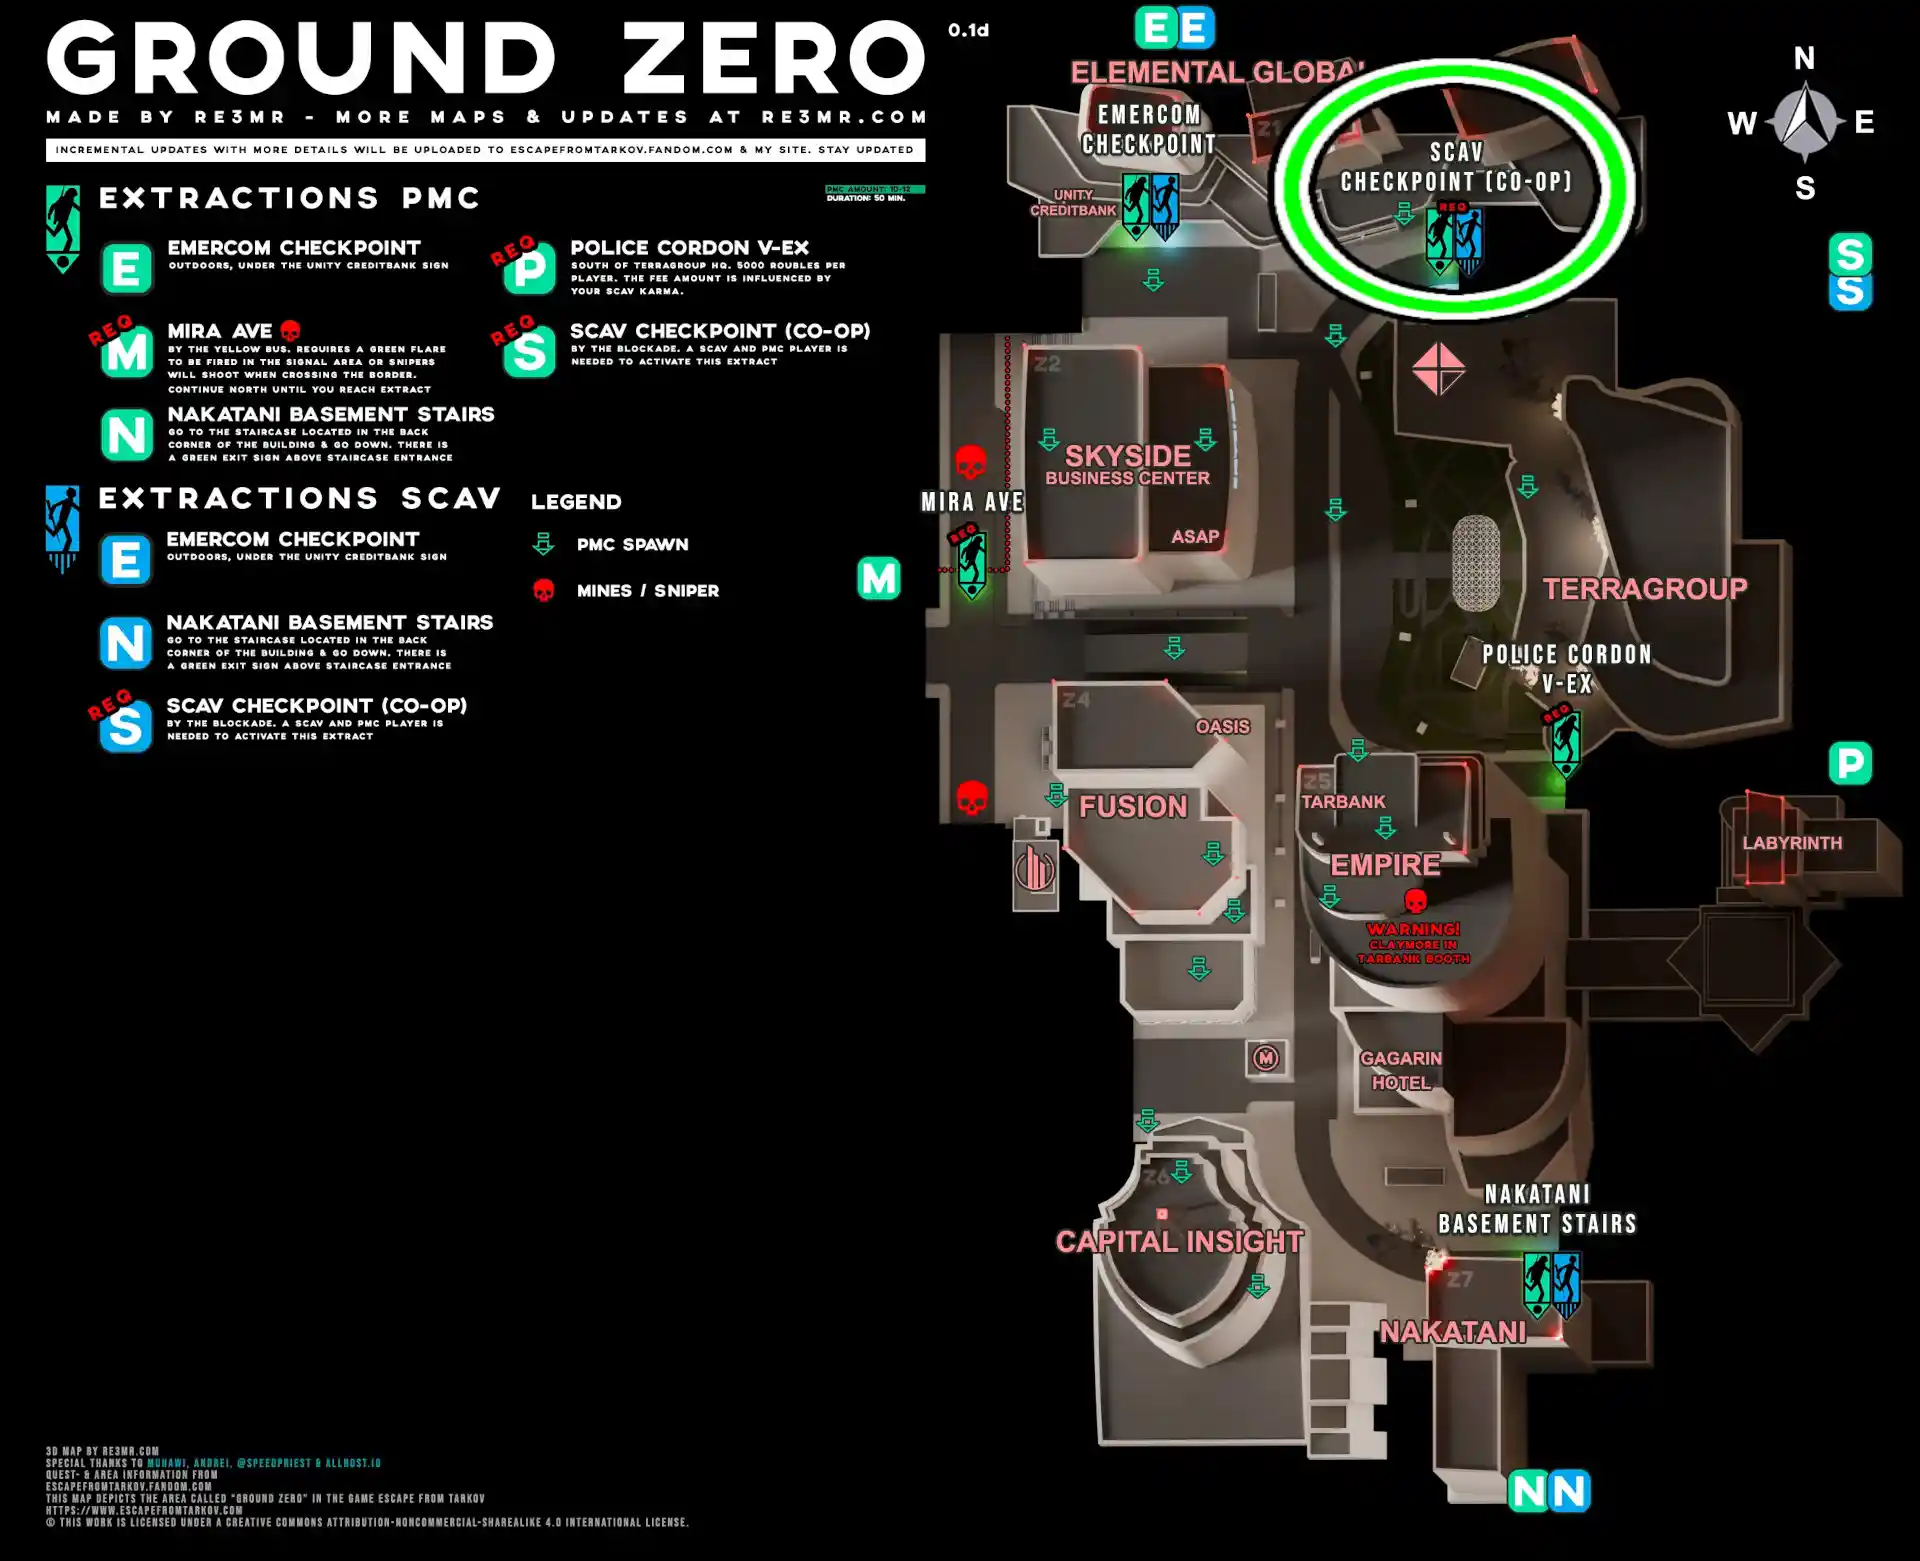 GROUND_ZERO-ESC-Scav_Checkpoint_(Co-op)-MAP.jpg